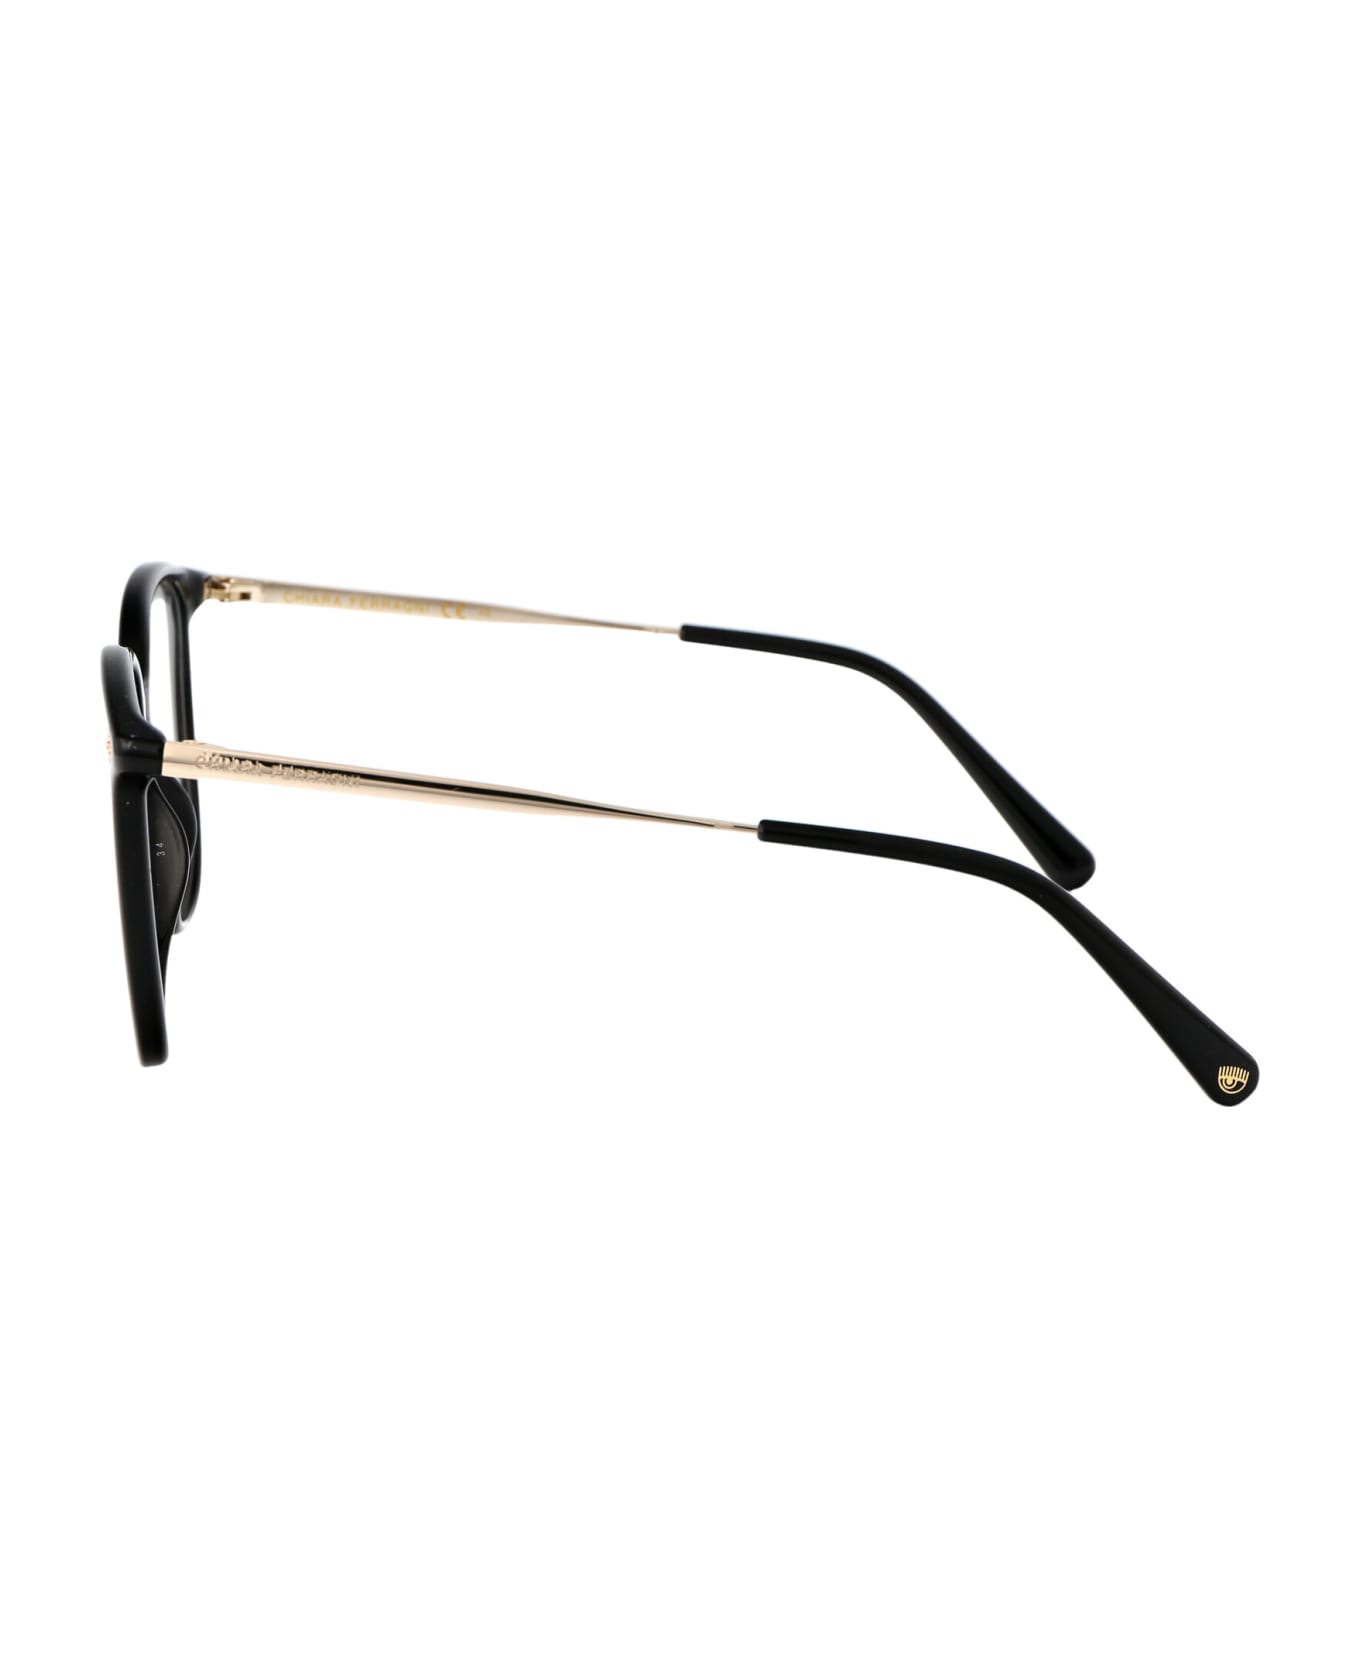 Chiara Ferragni Cf 1029 Glasses - 807 BLACK アイウェア